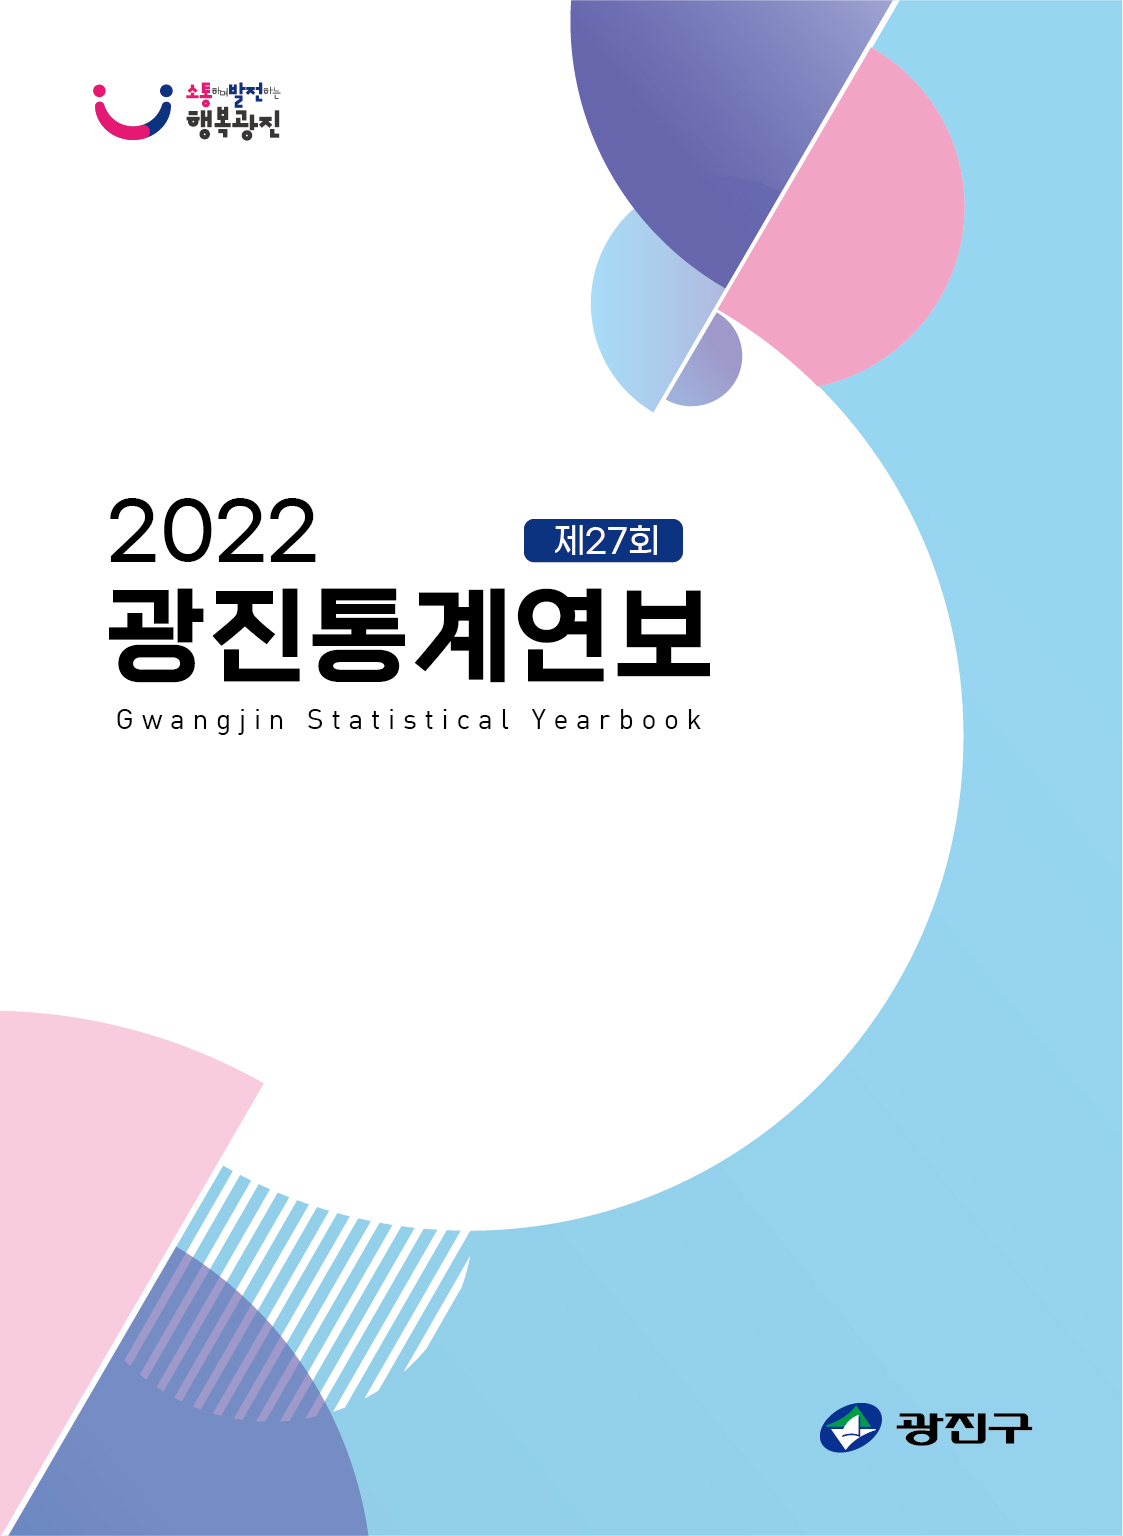 2022년 광진통계연보